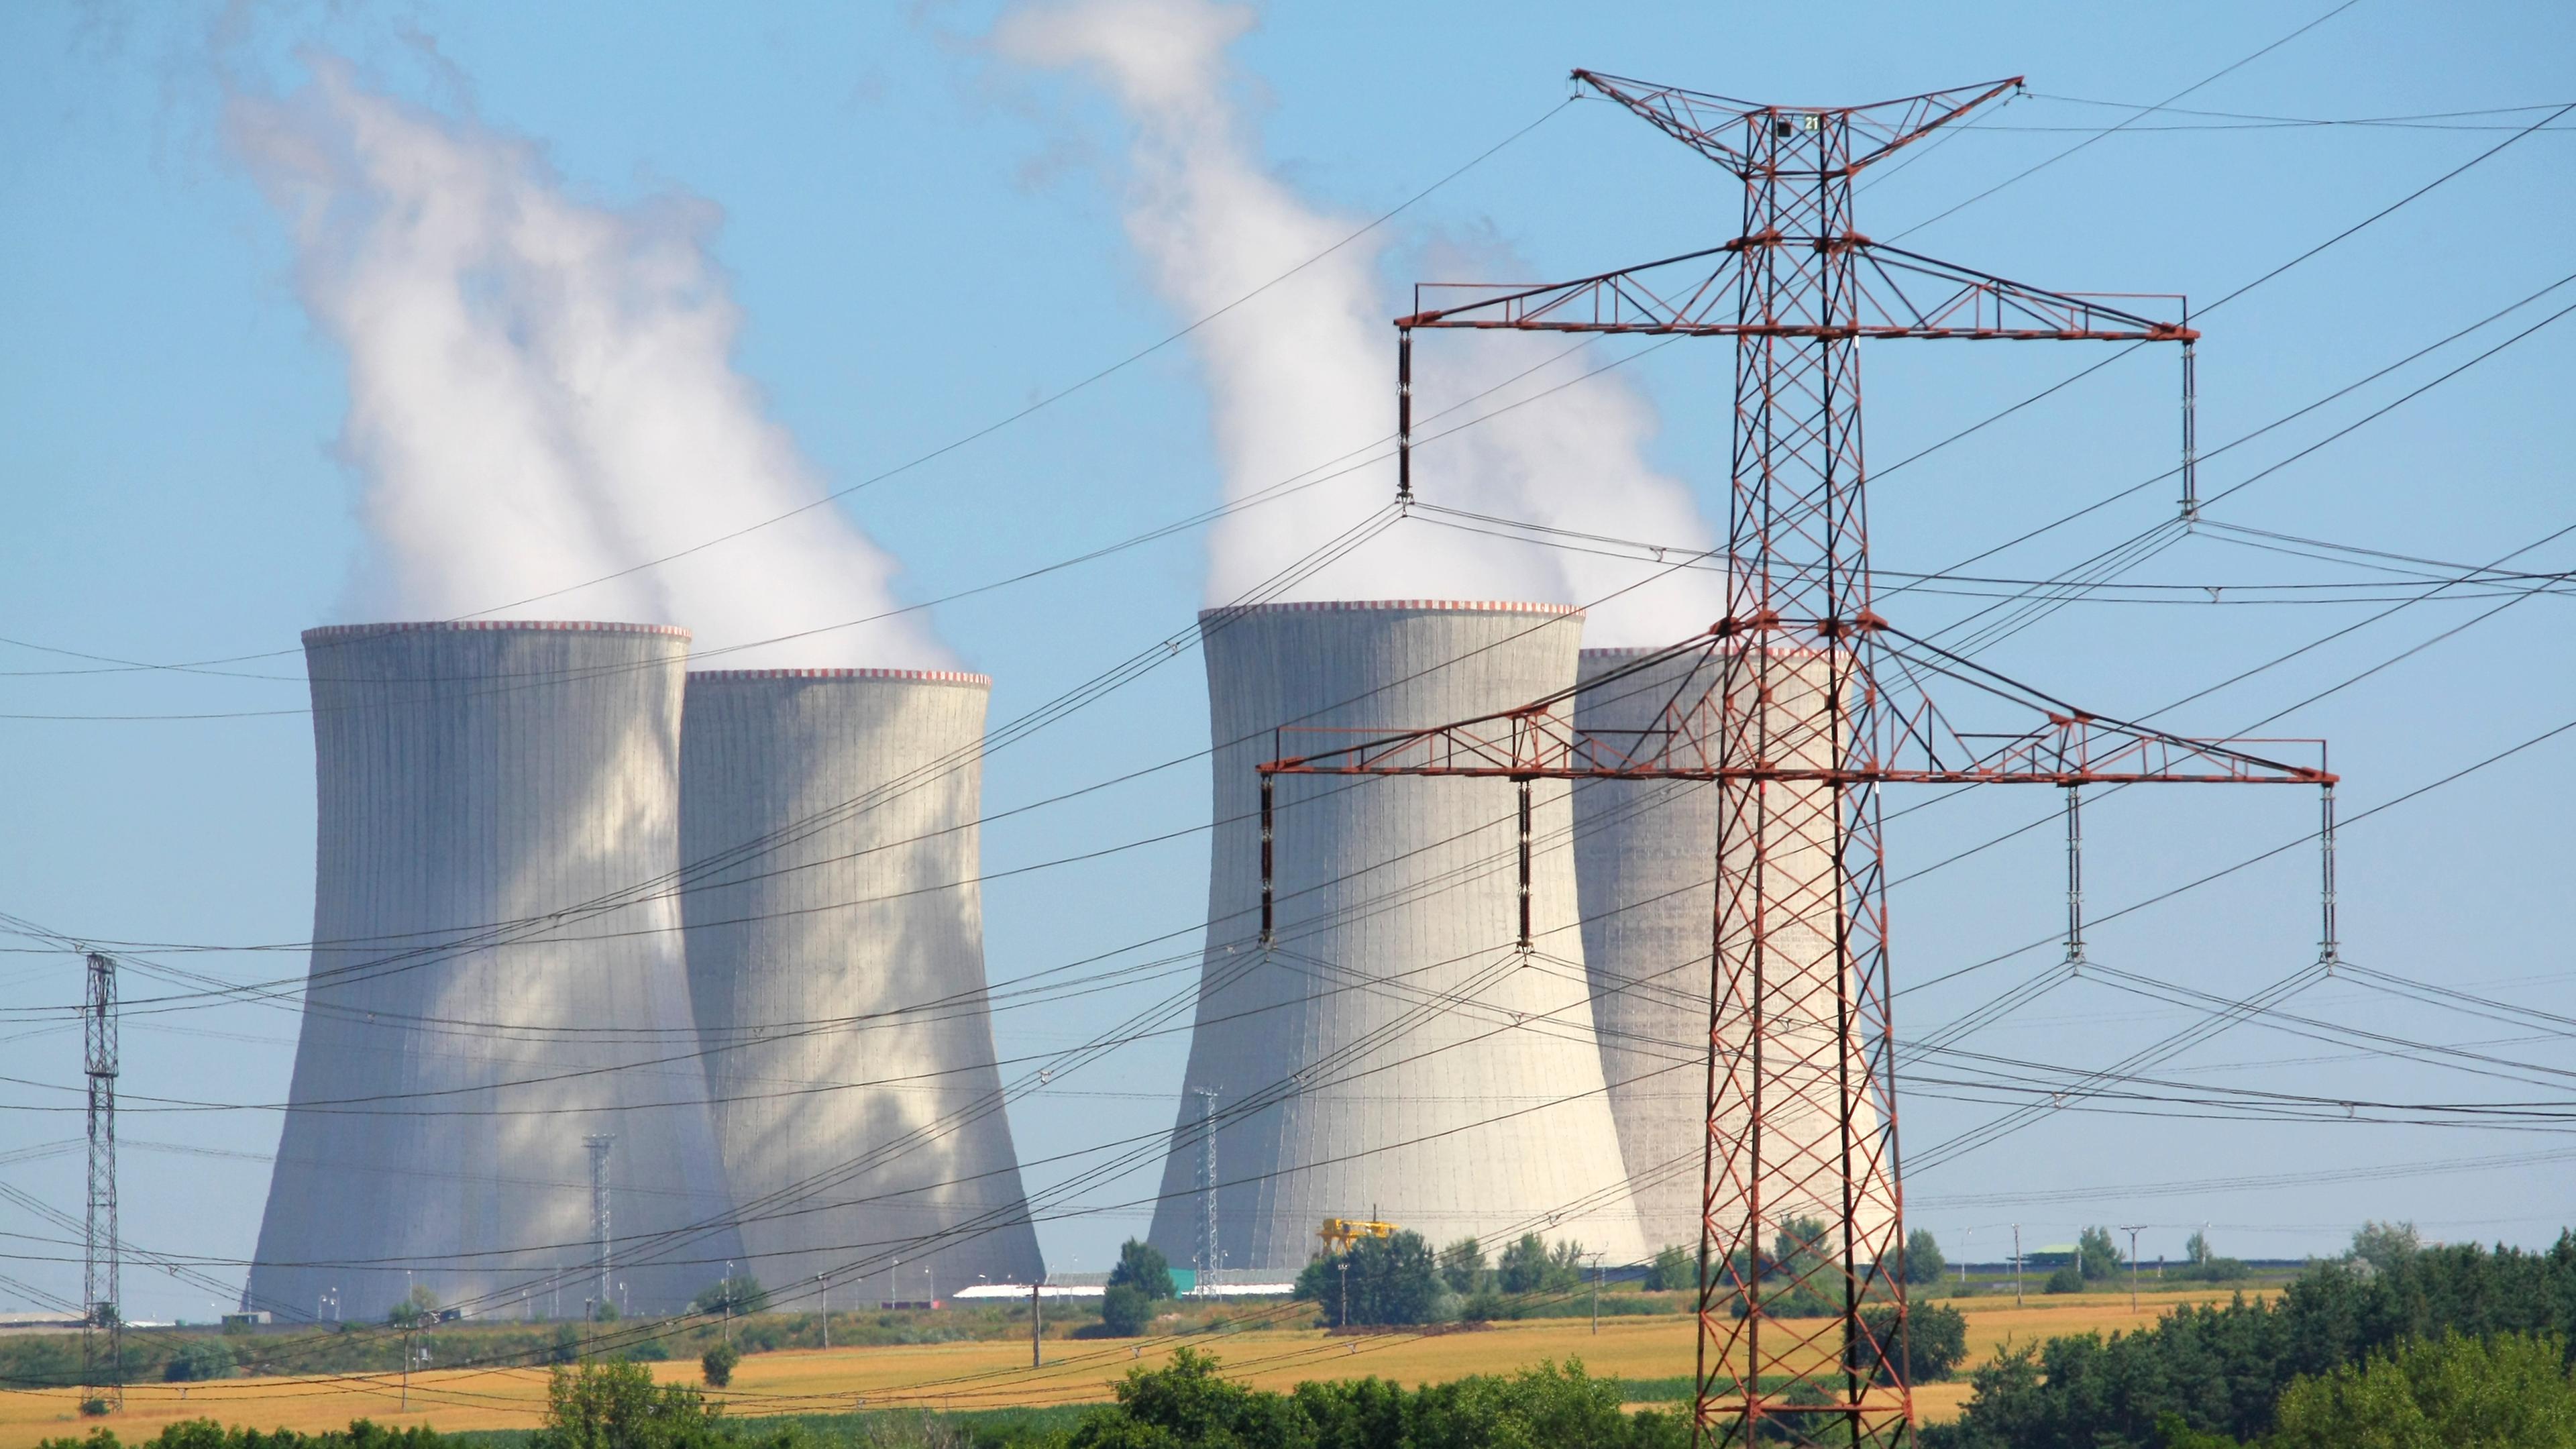 Atomkraftwerk und Hochspannungsmast